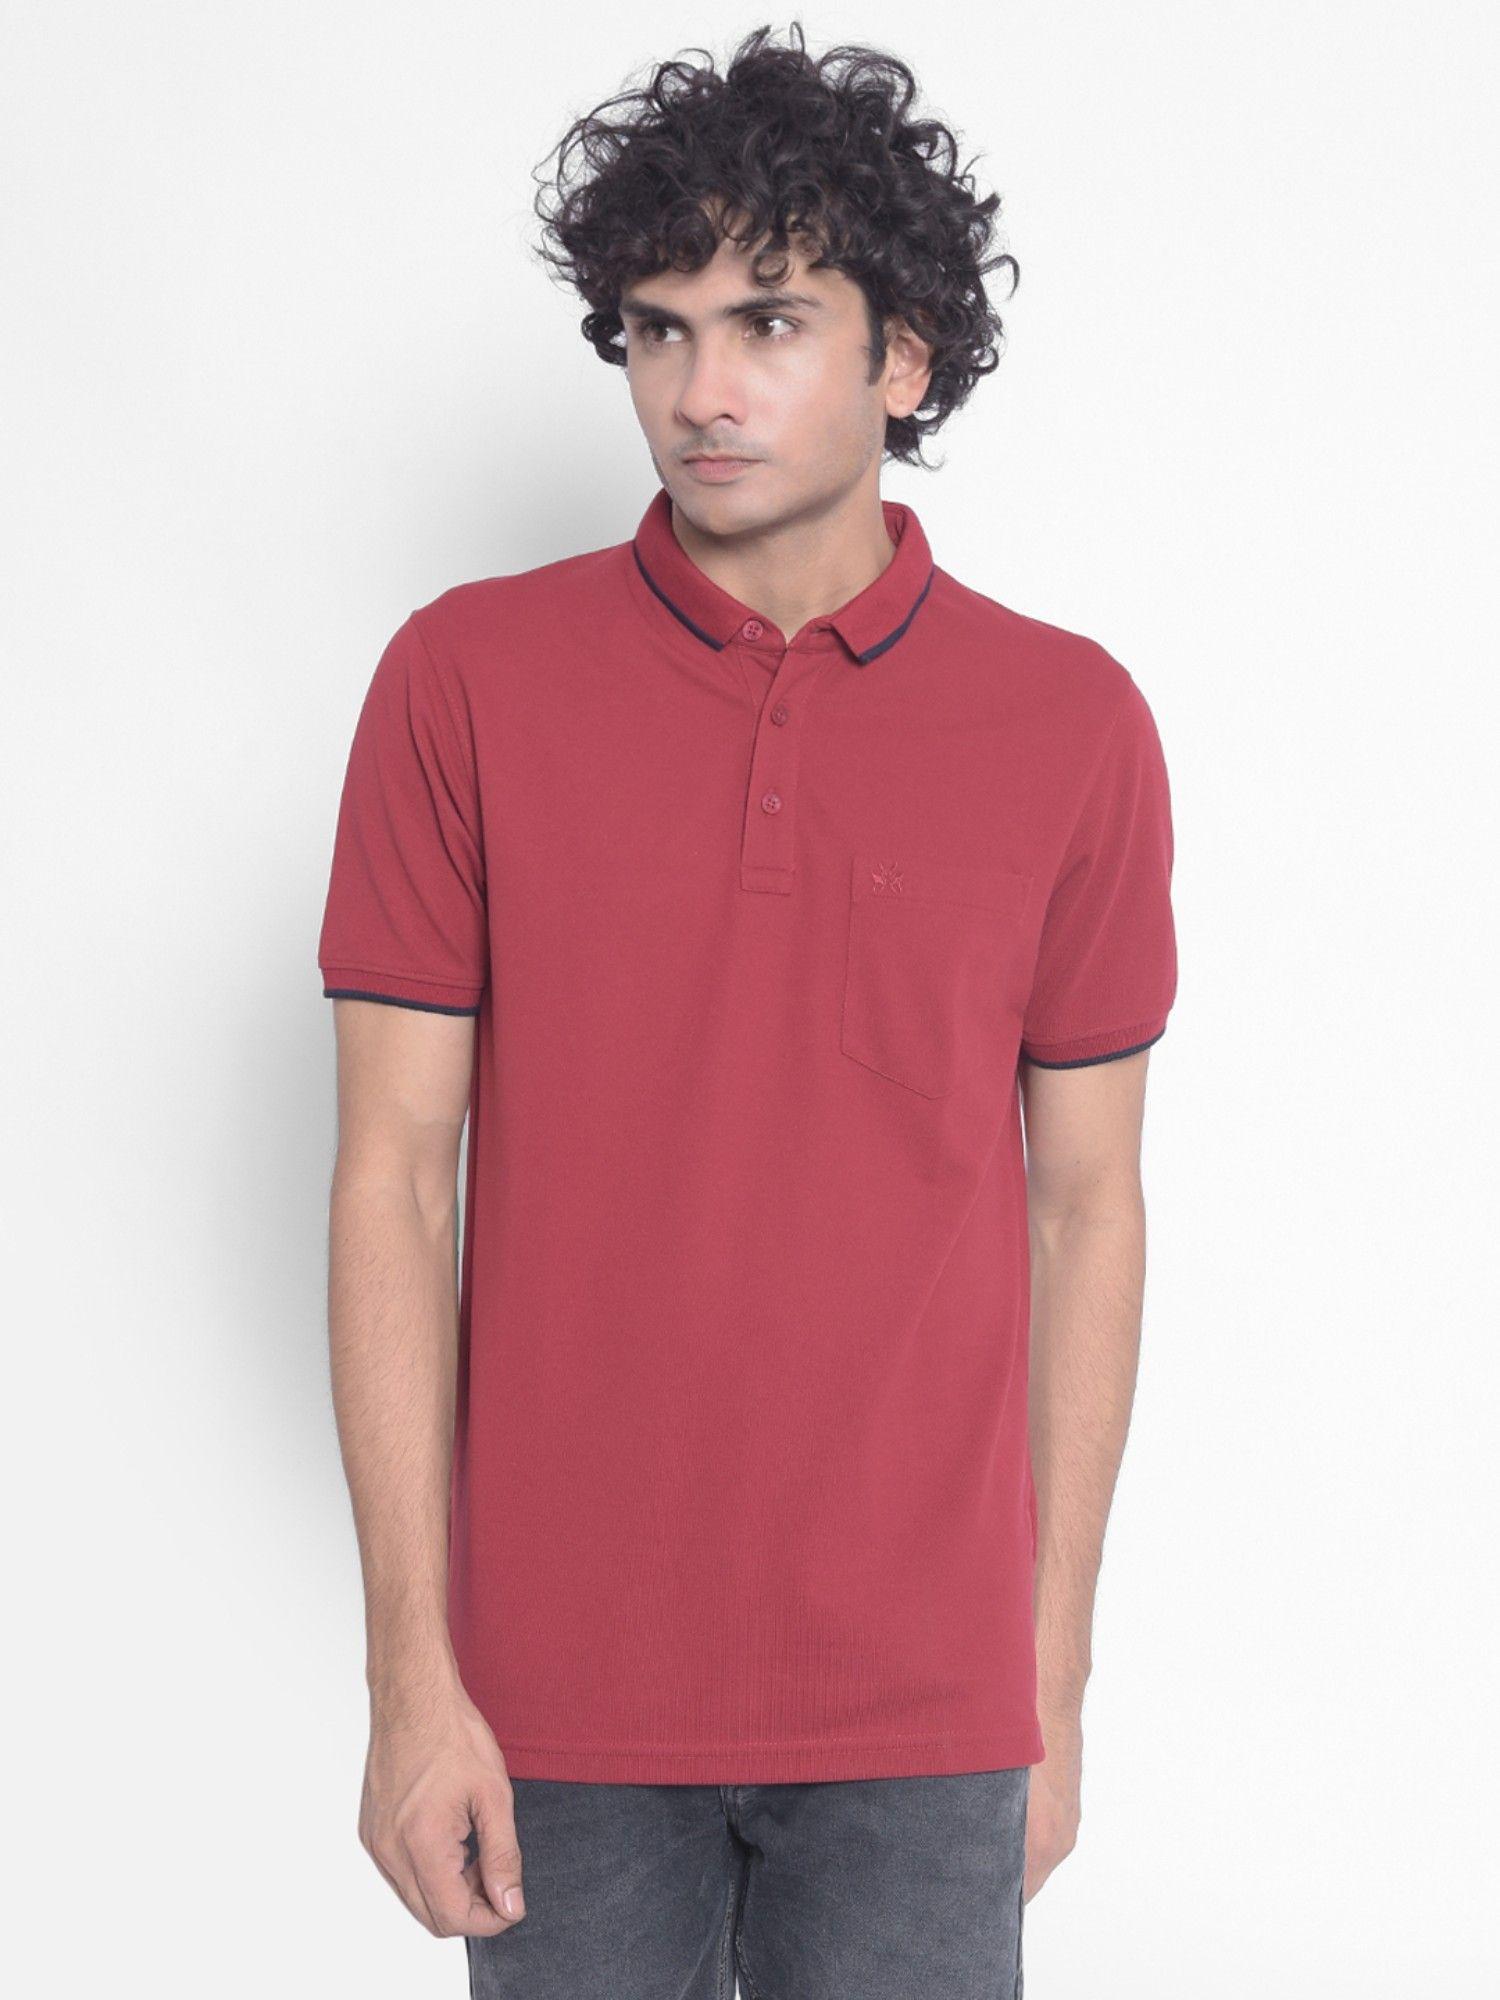 men's maroon polo t-shirt